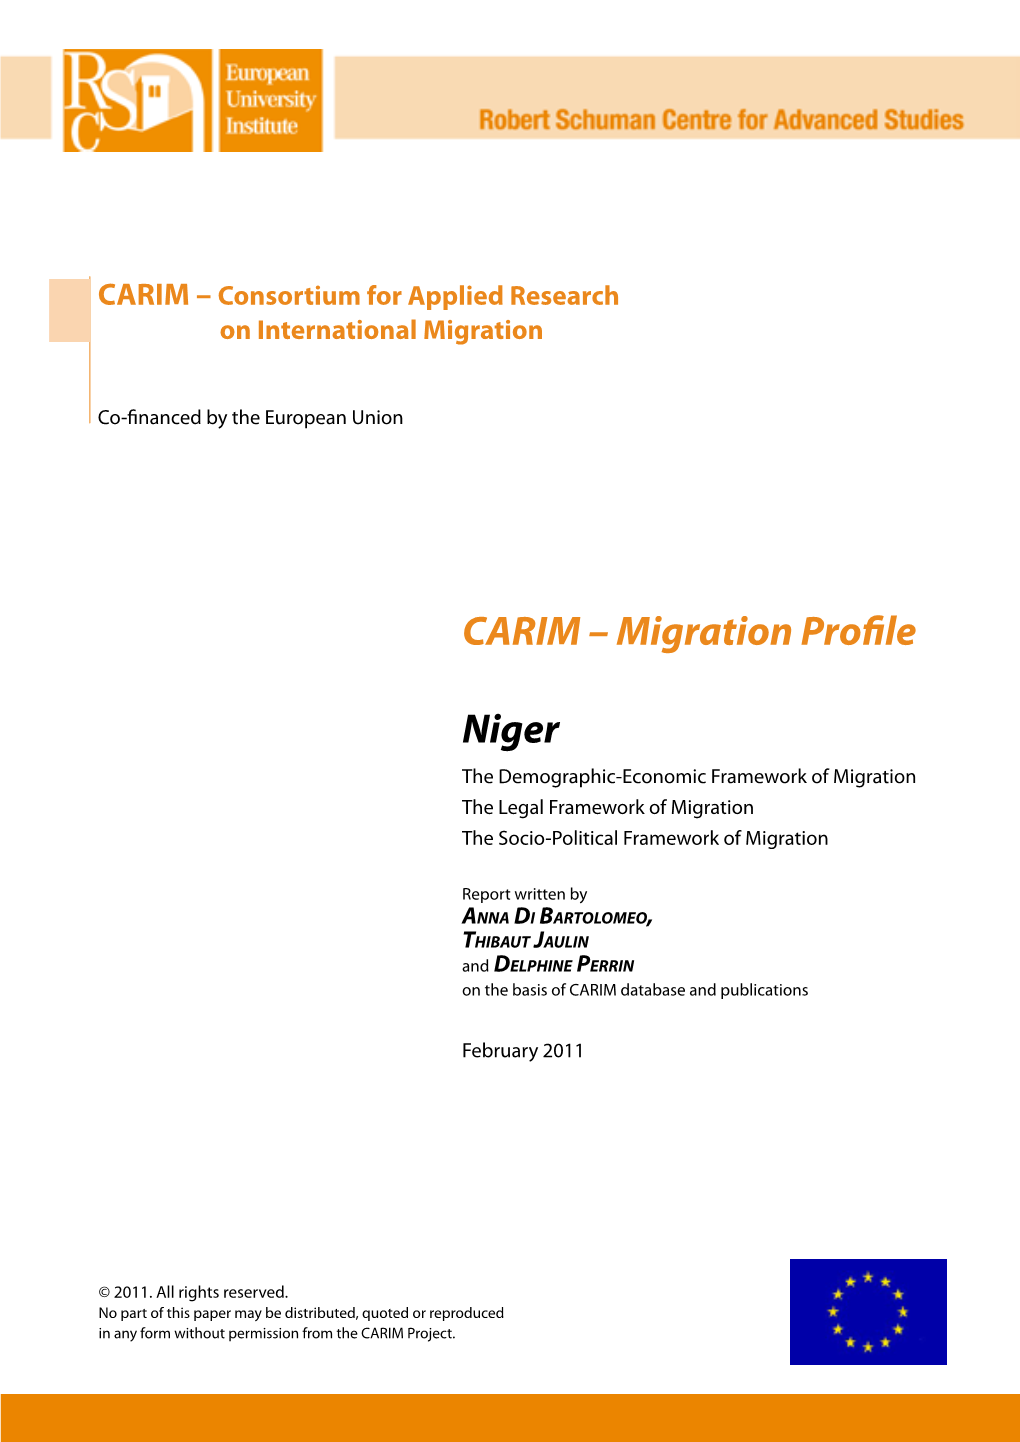 CARIM – Migration Profile